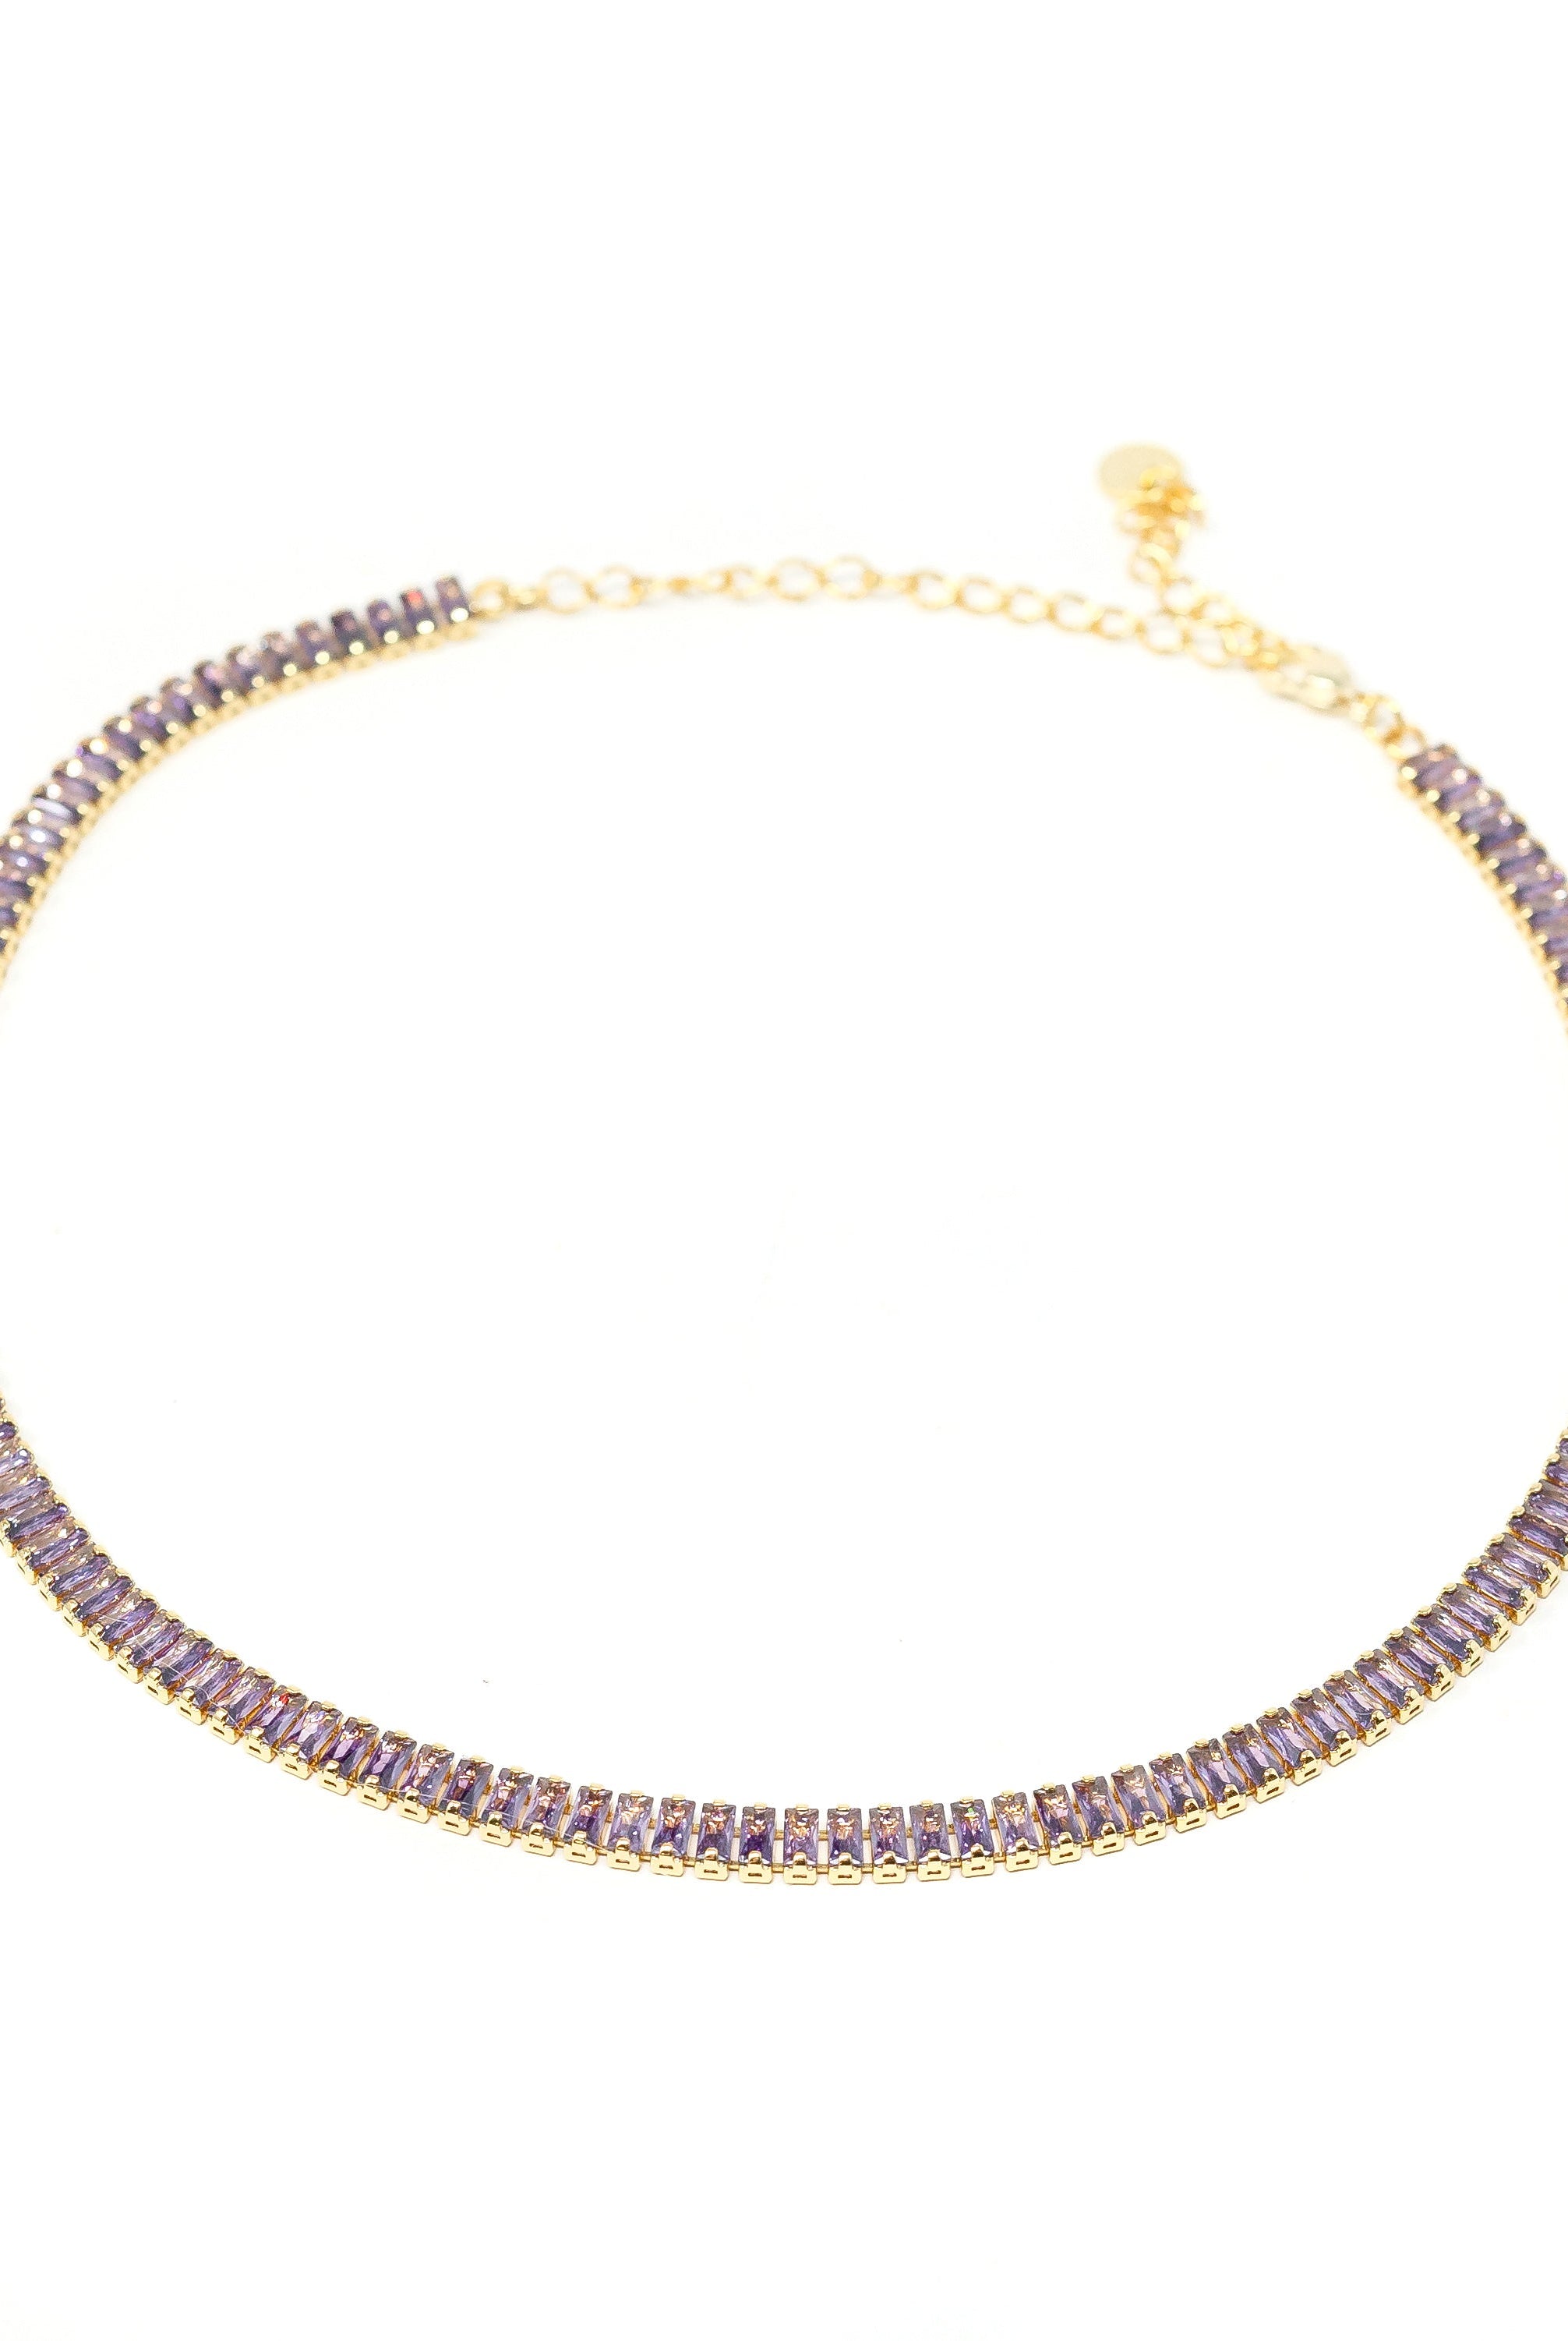 Baguette Burst Necklace in Lavender-Necklaces-The Sis Kiss®-Urban Threadz Boutique, Women's Fashion Boutique in Saugatuck, MI